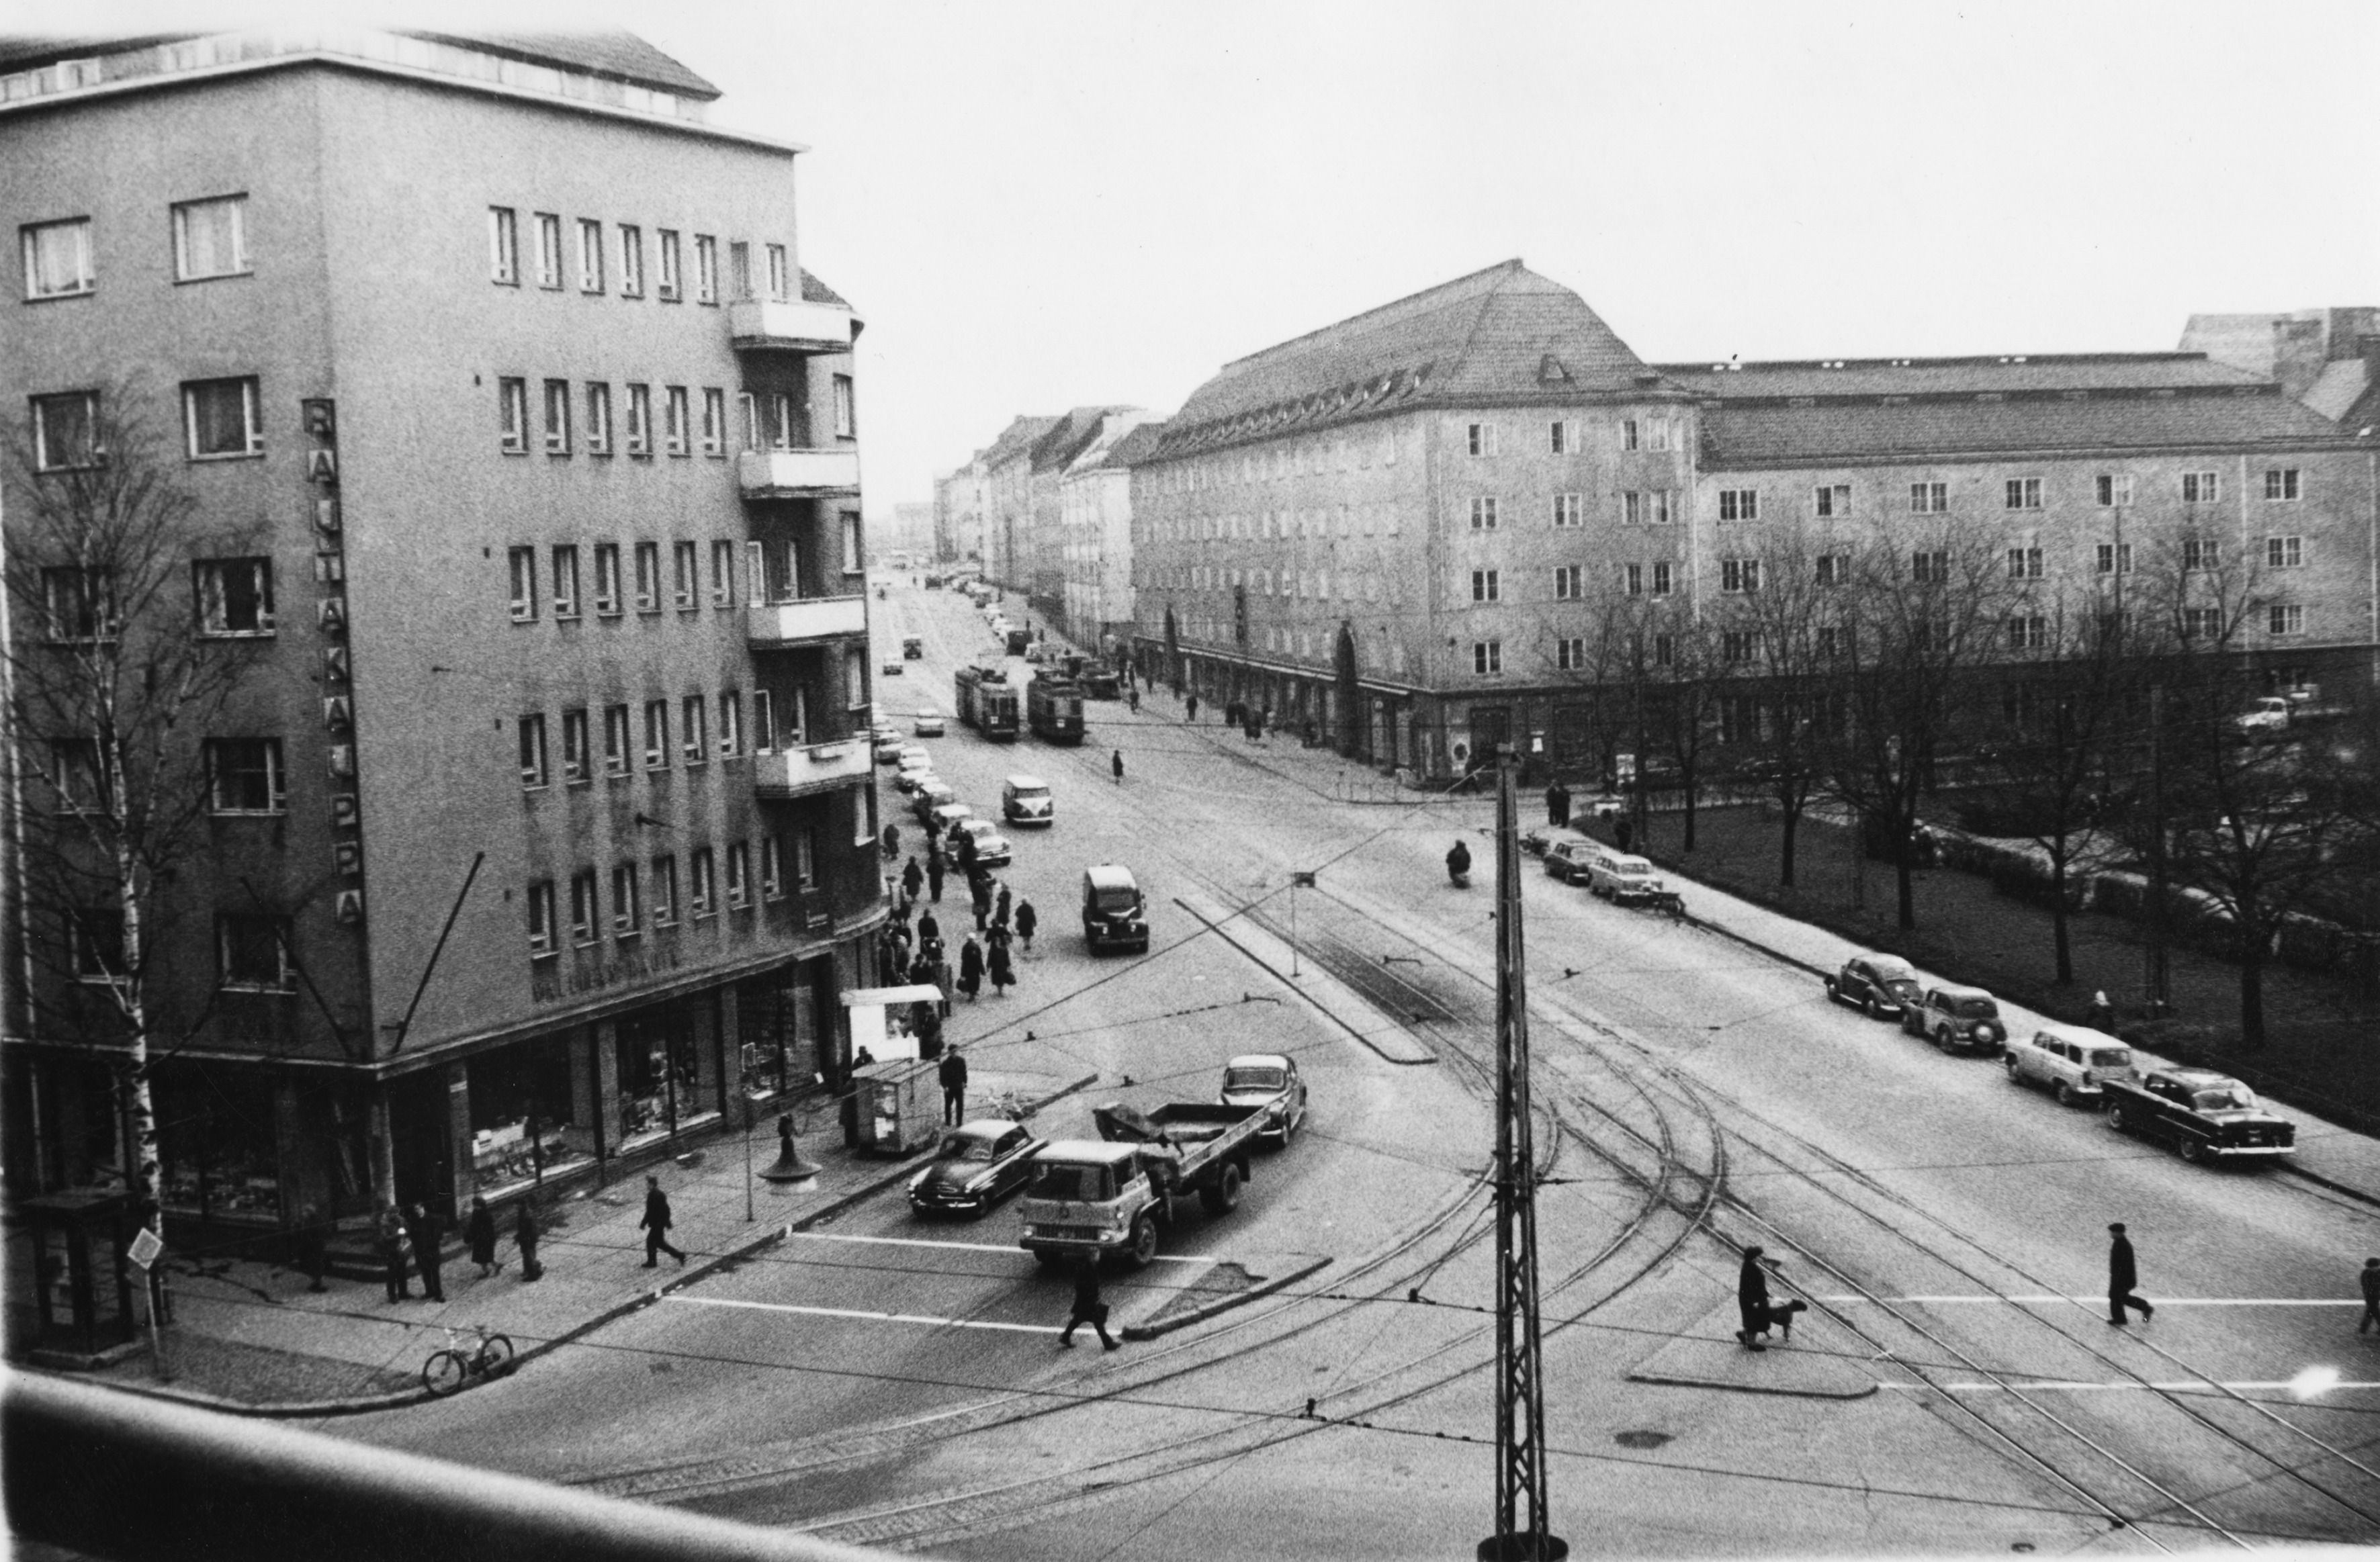 Liikennettä Hämeentien ja Sturenkadun risteyksessä. Oikealla Paavalin puisto, vasemmalla Hämeentie 94.